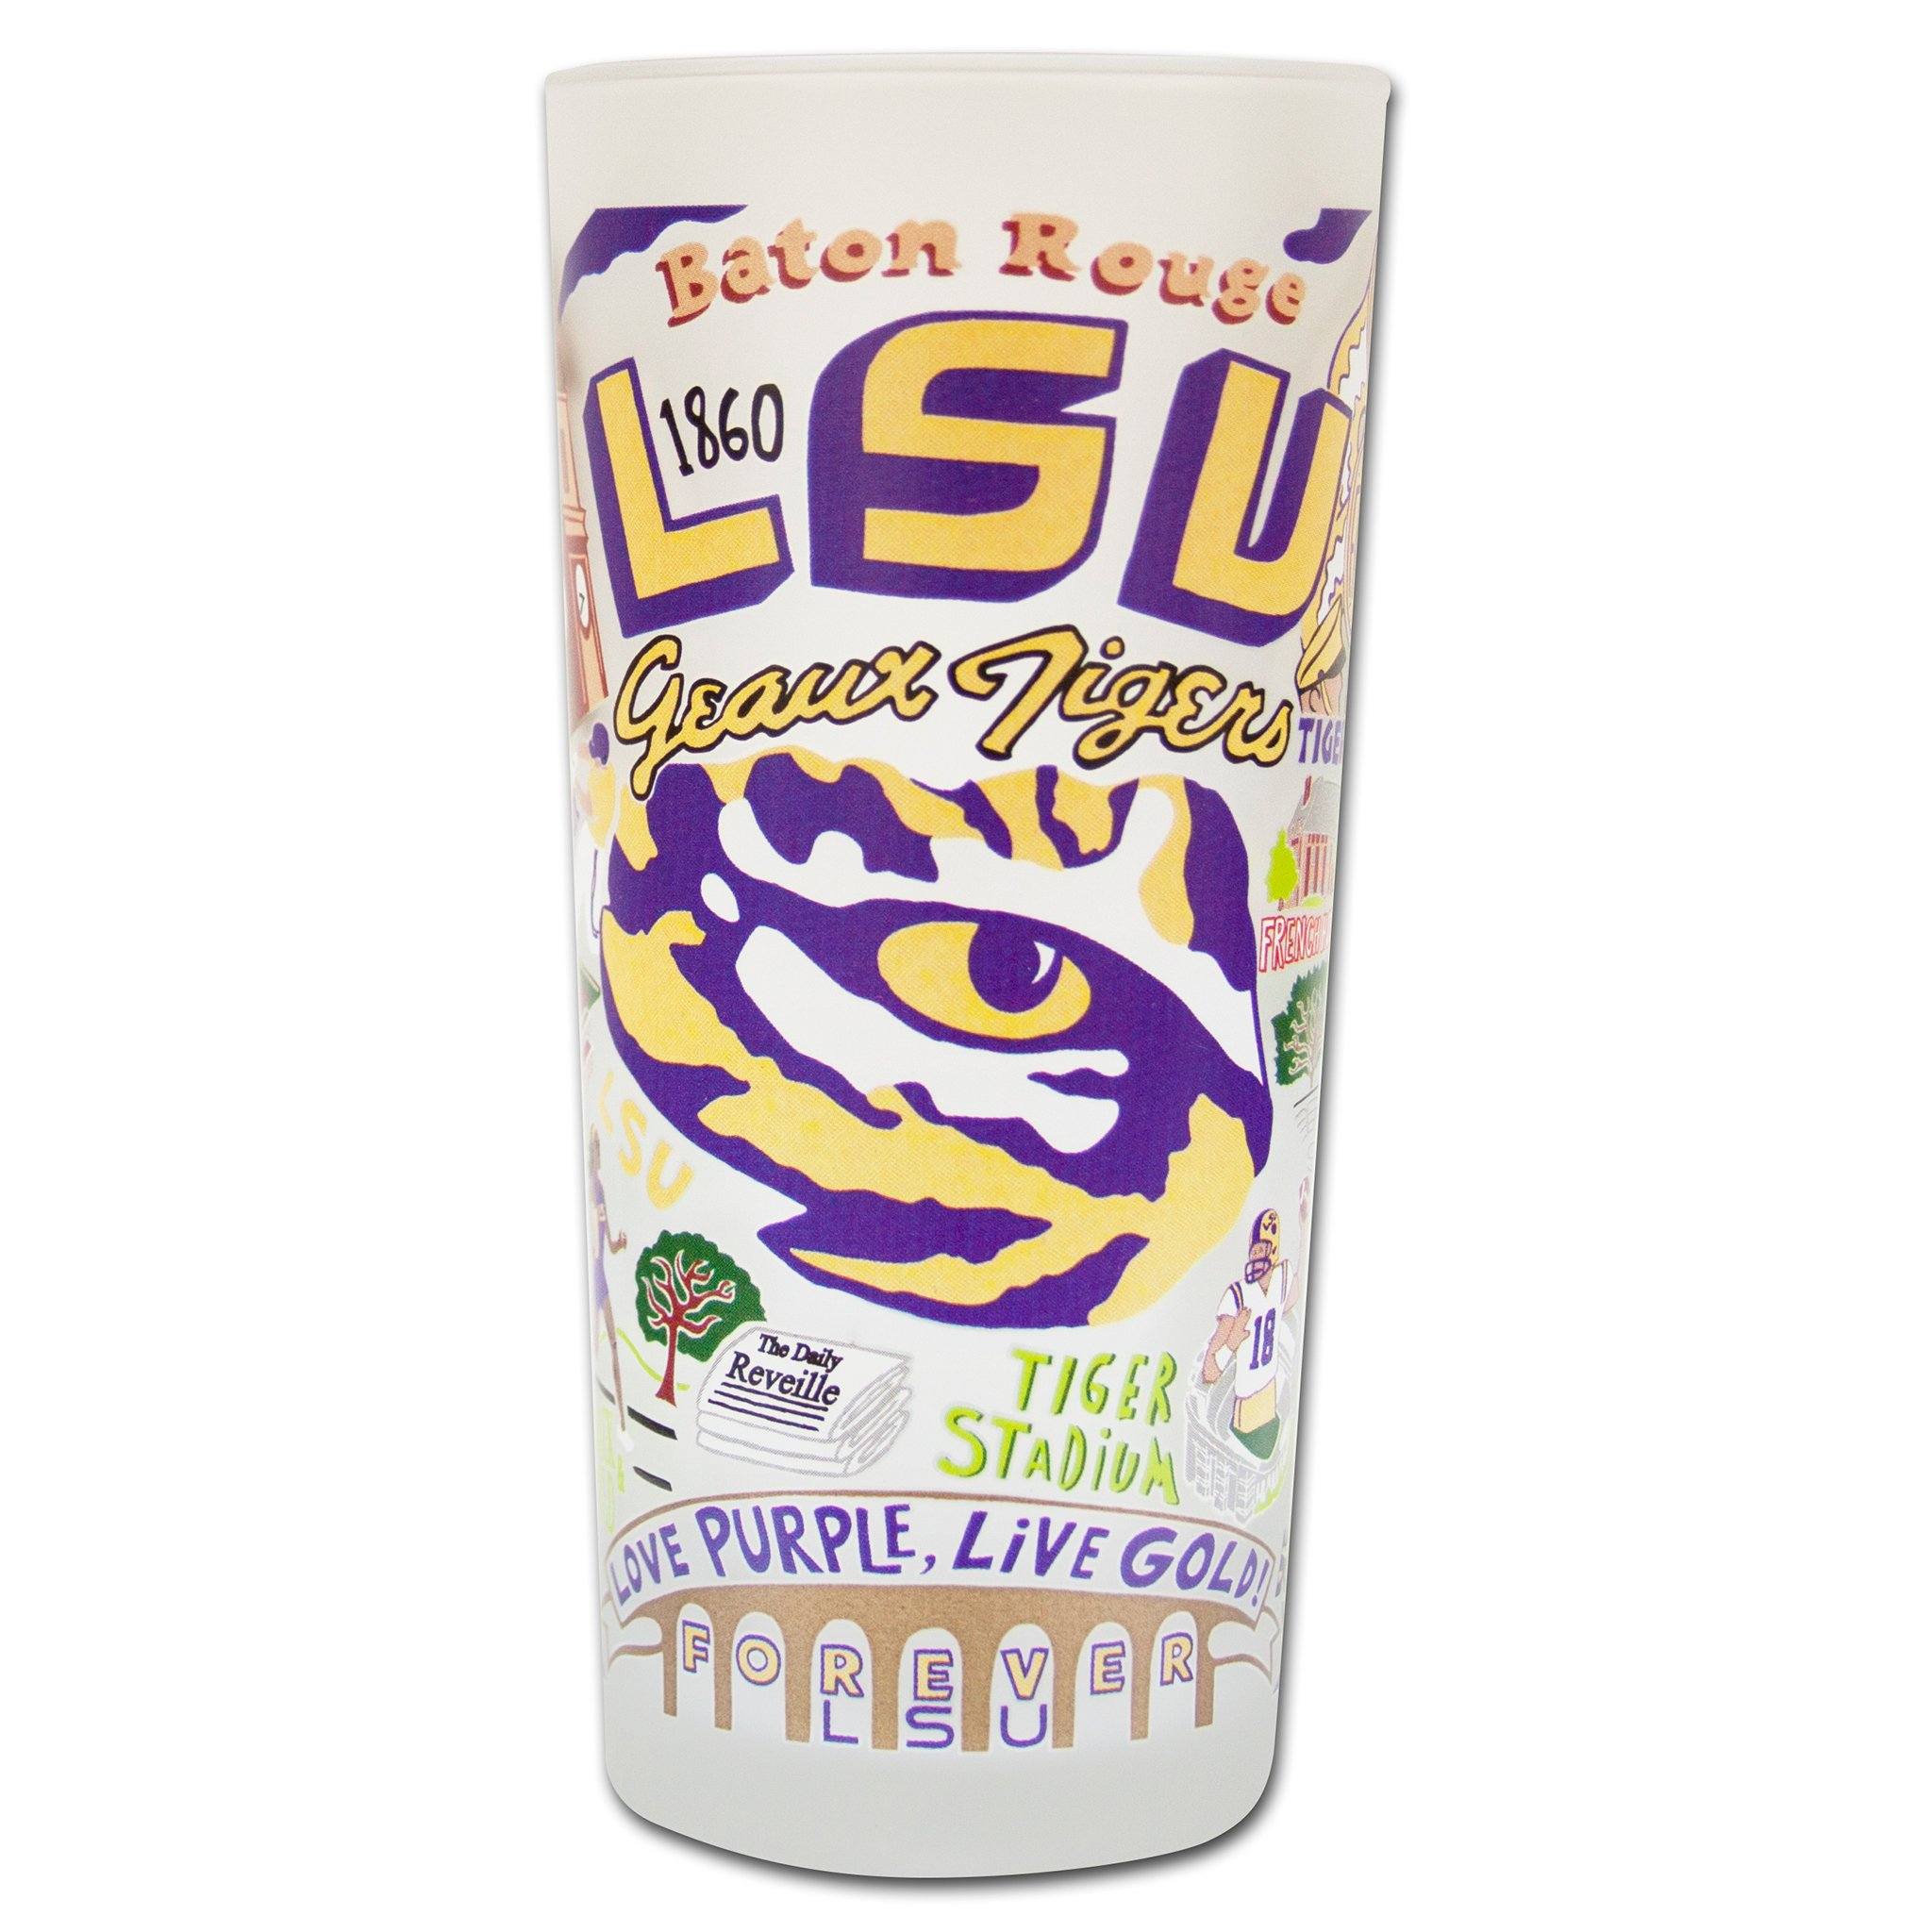 Louisiana State University Cups and Mugs, Louisiana State